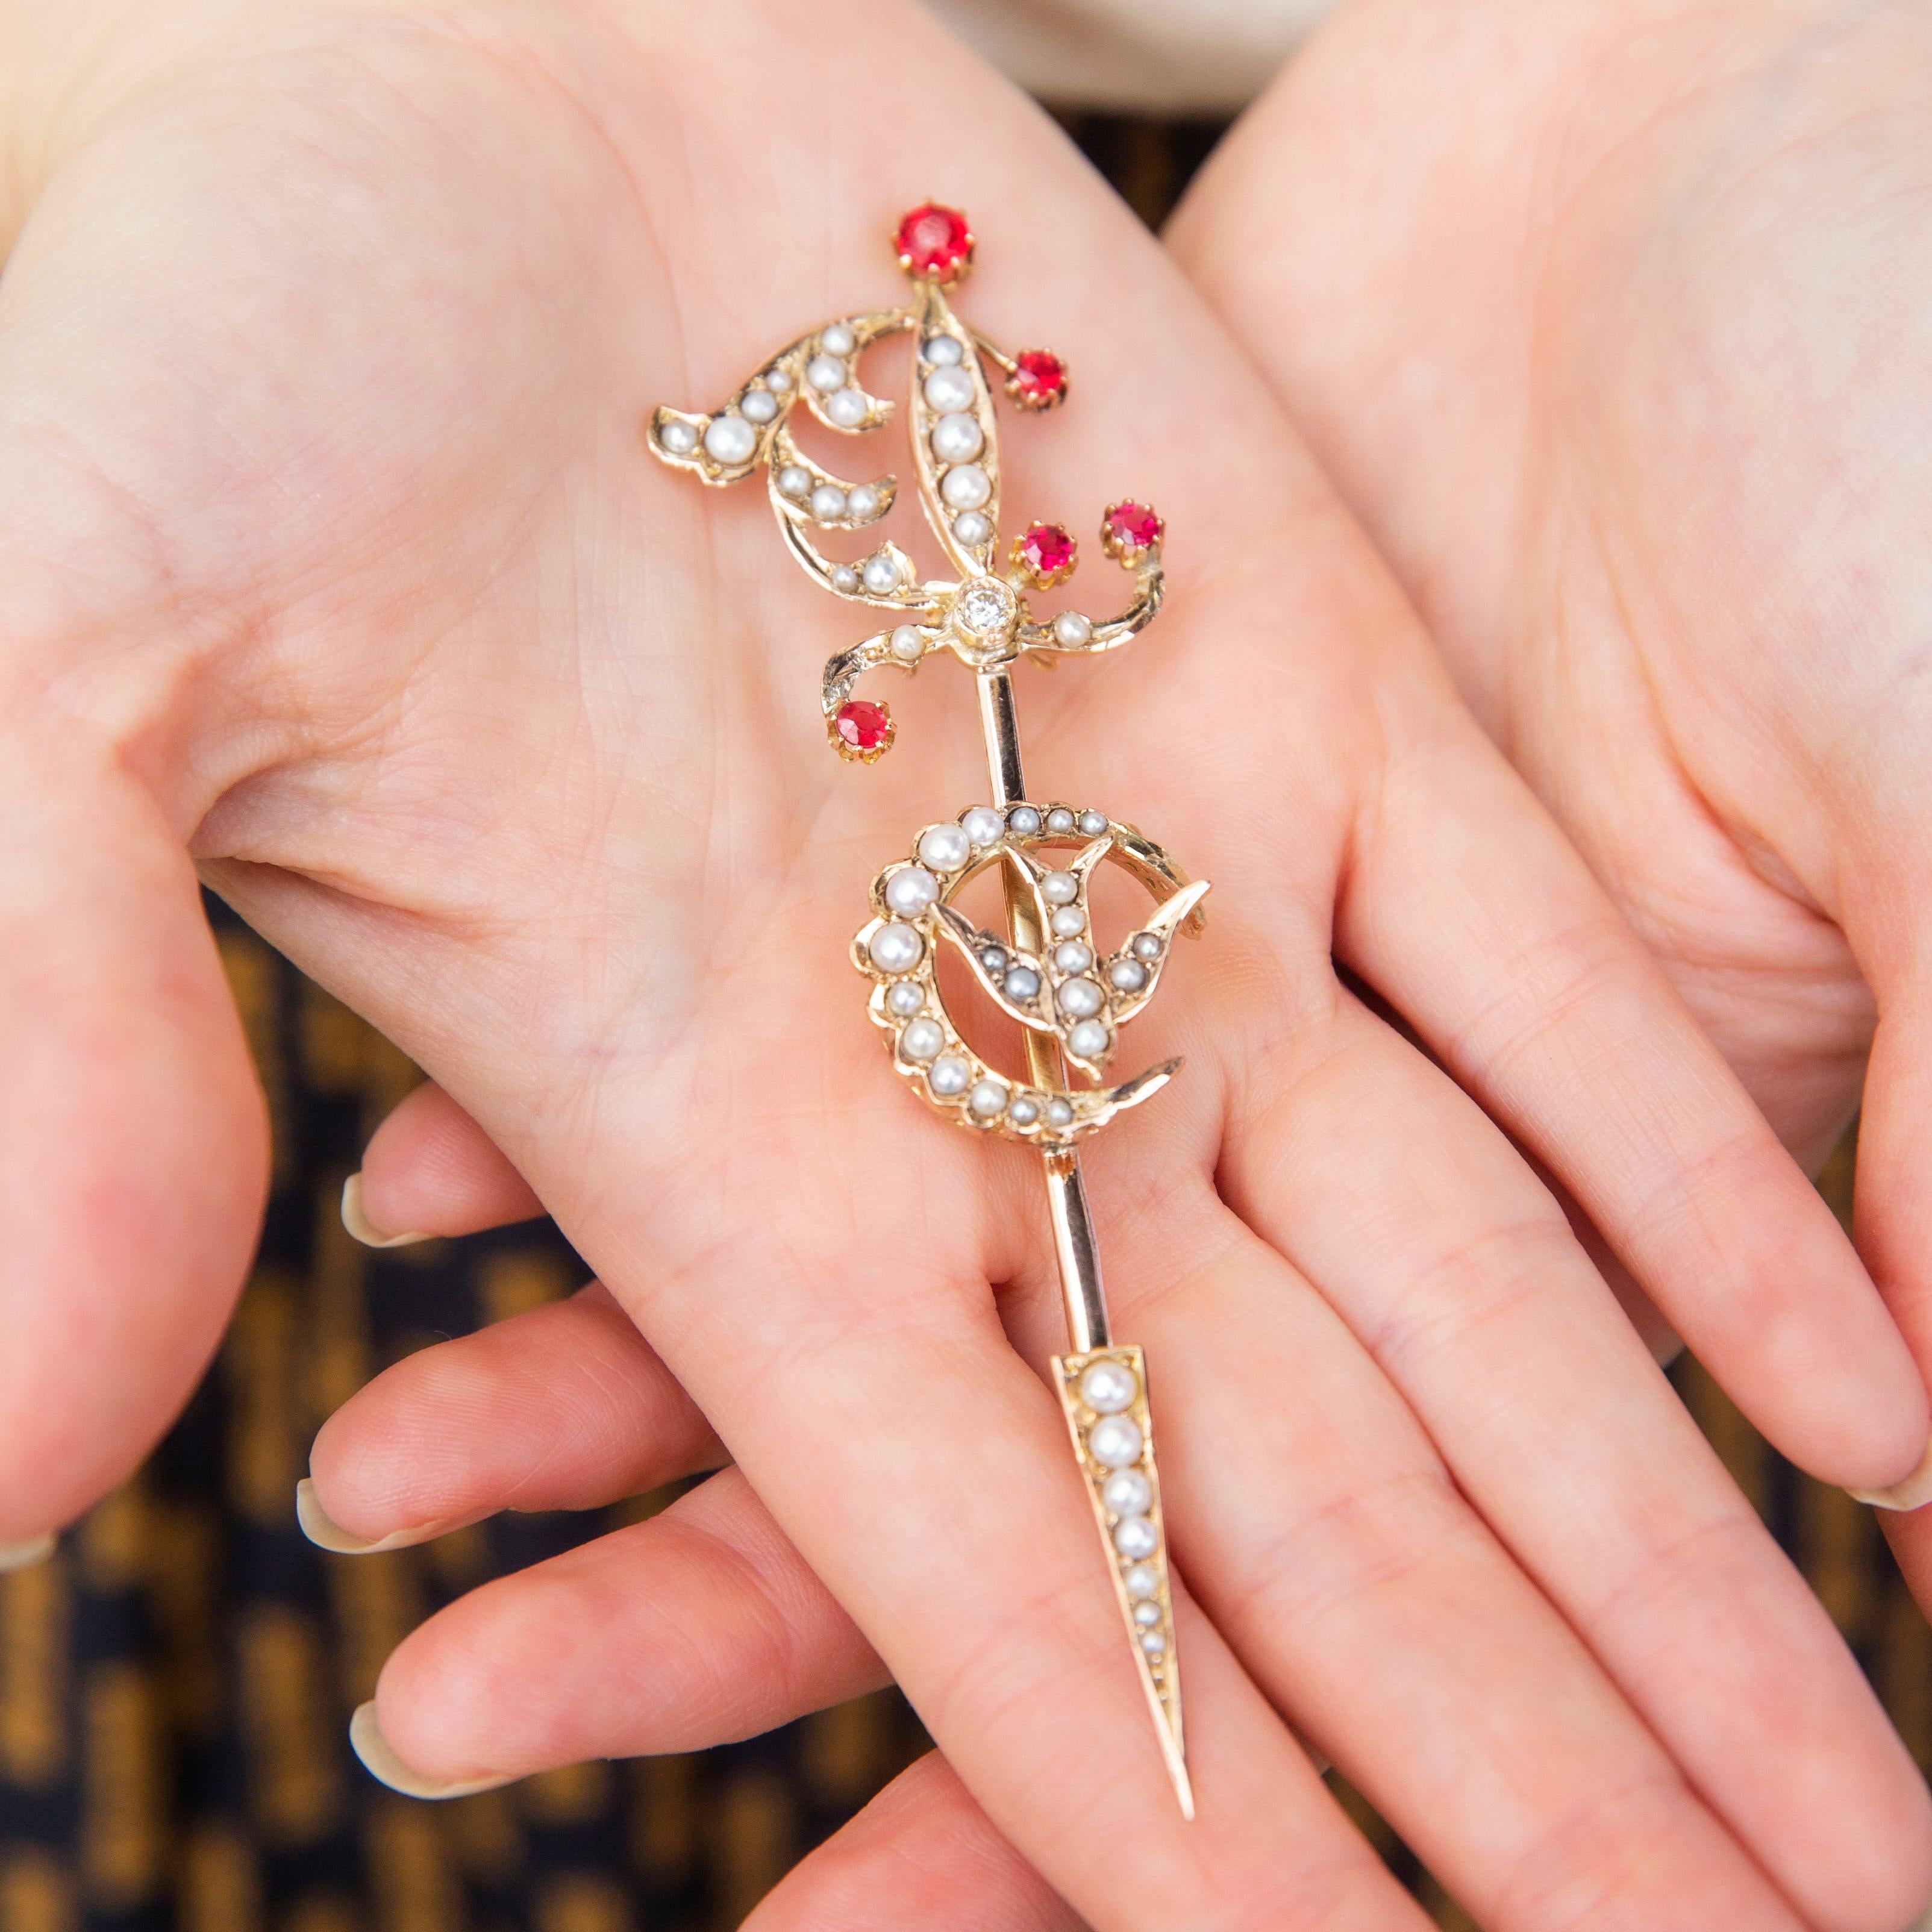 Imprégnée de l'histoire édouardienne, la broche Mary est exquise. L'épée, le croissant de lune et l'hirondelle sont magnifiquement travaillés en or 9 carats. Des rubis cramoisis et de somptueuses perles de rocaille embellissent et adoucissent les